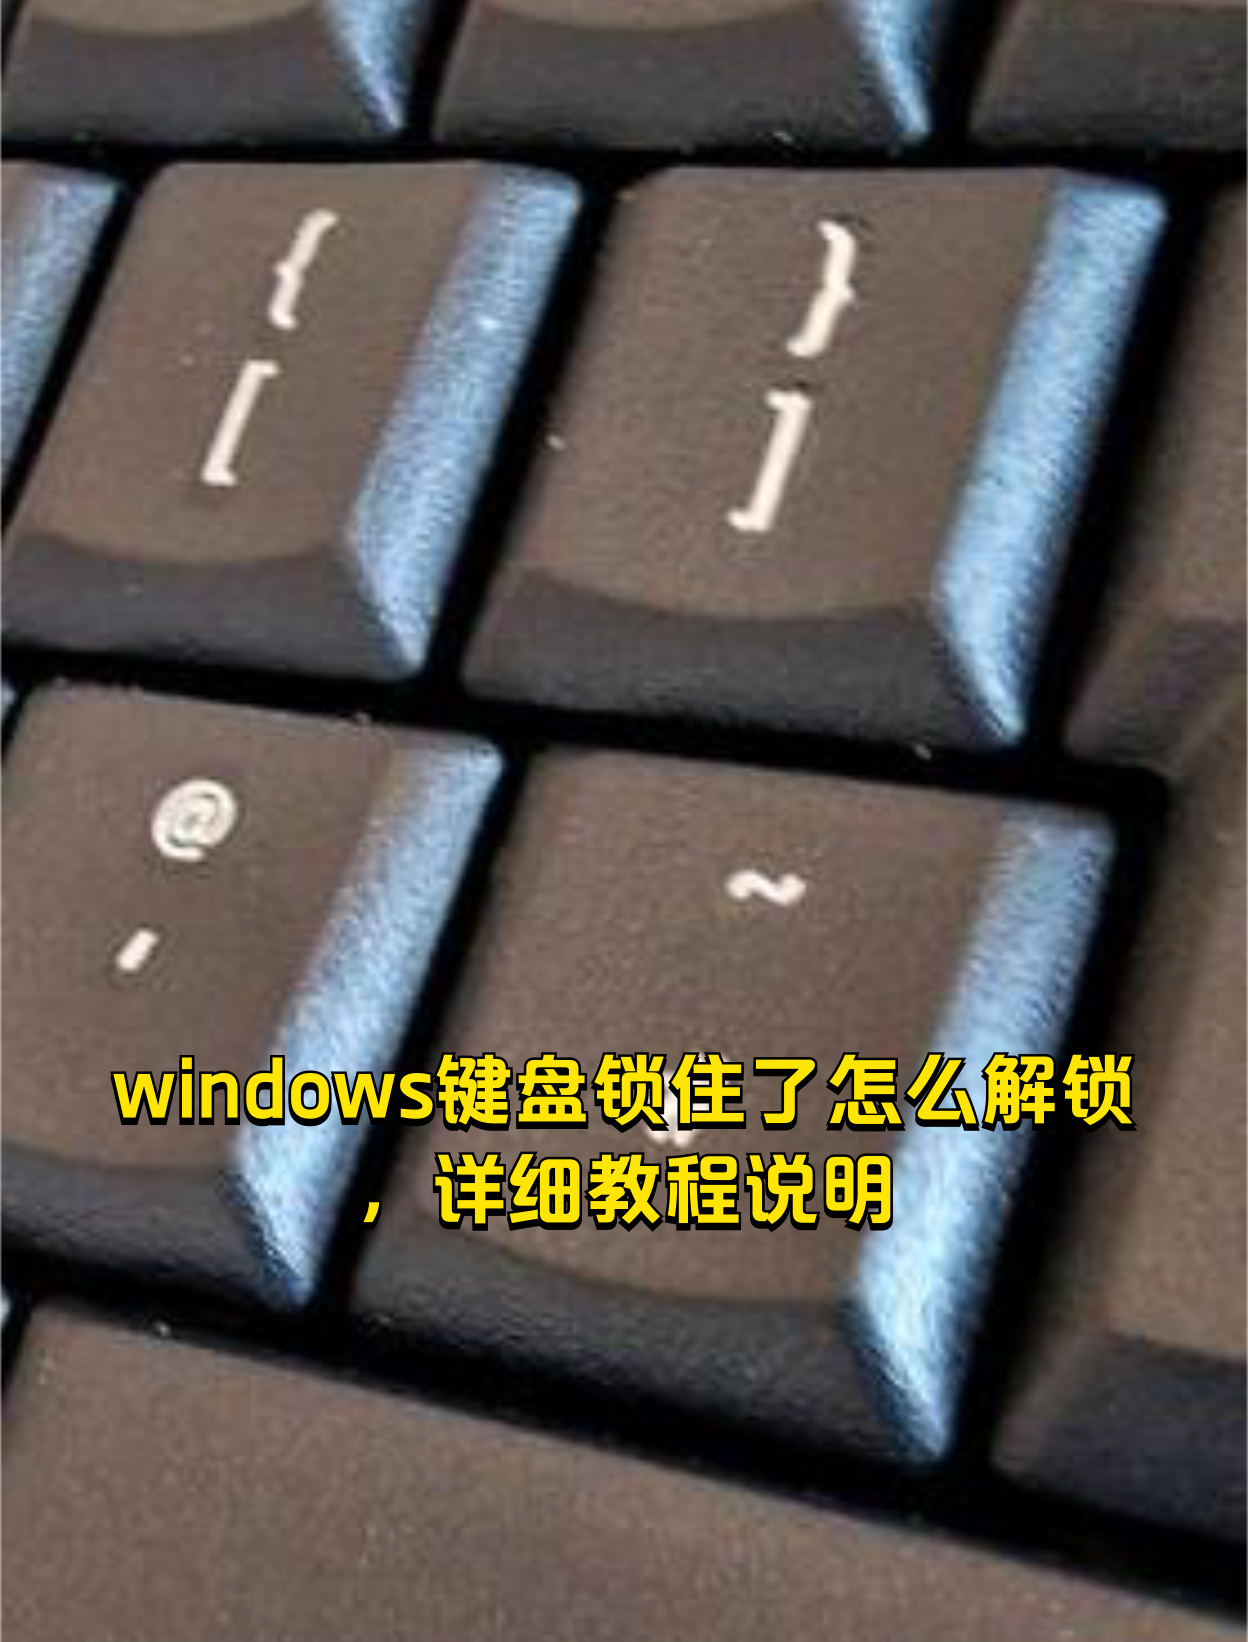 微软笔记本键盘锁图片